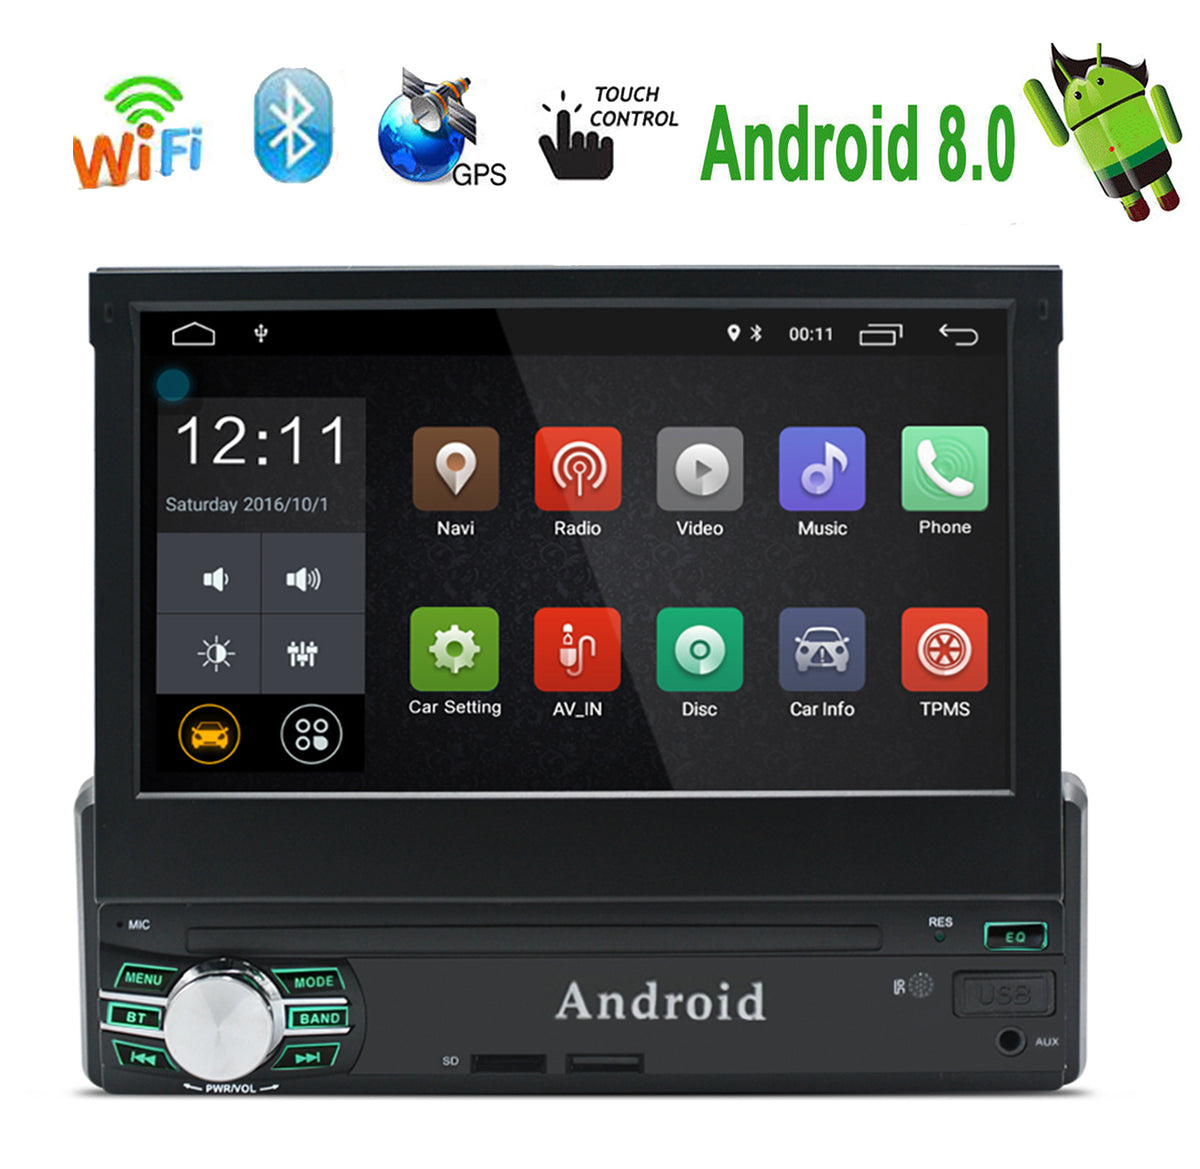 Autorradio 1 DIN con Tdt Gps Bluetooth y Windows 8 